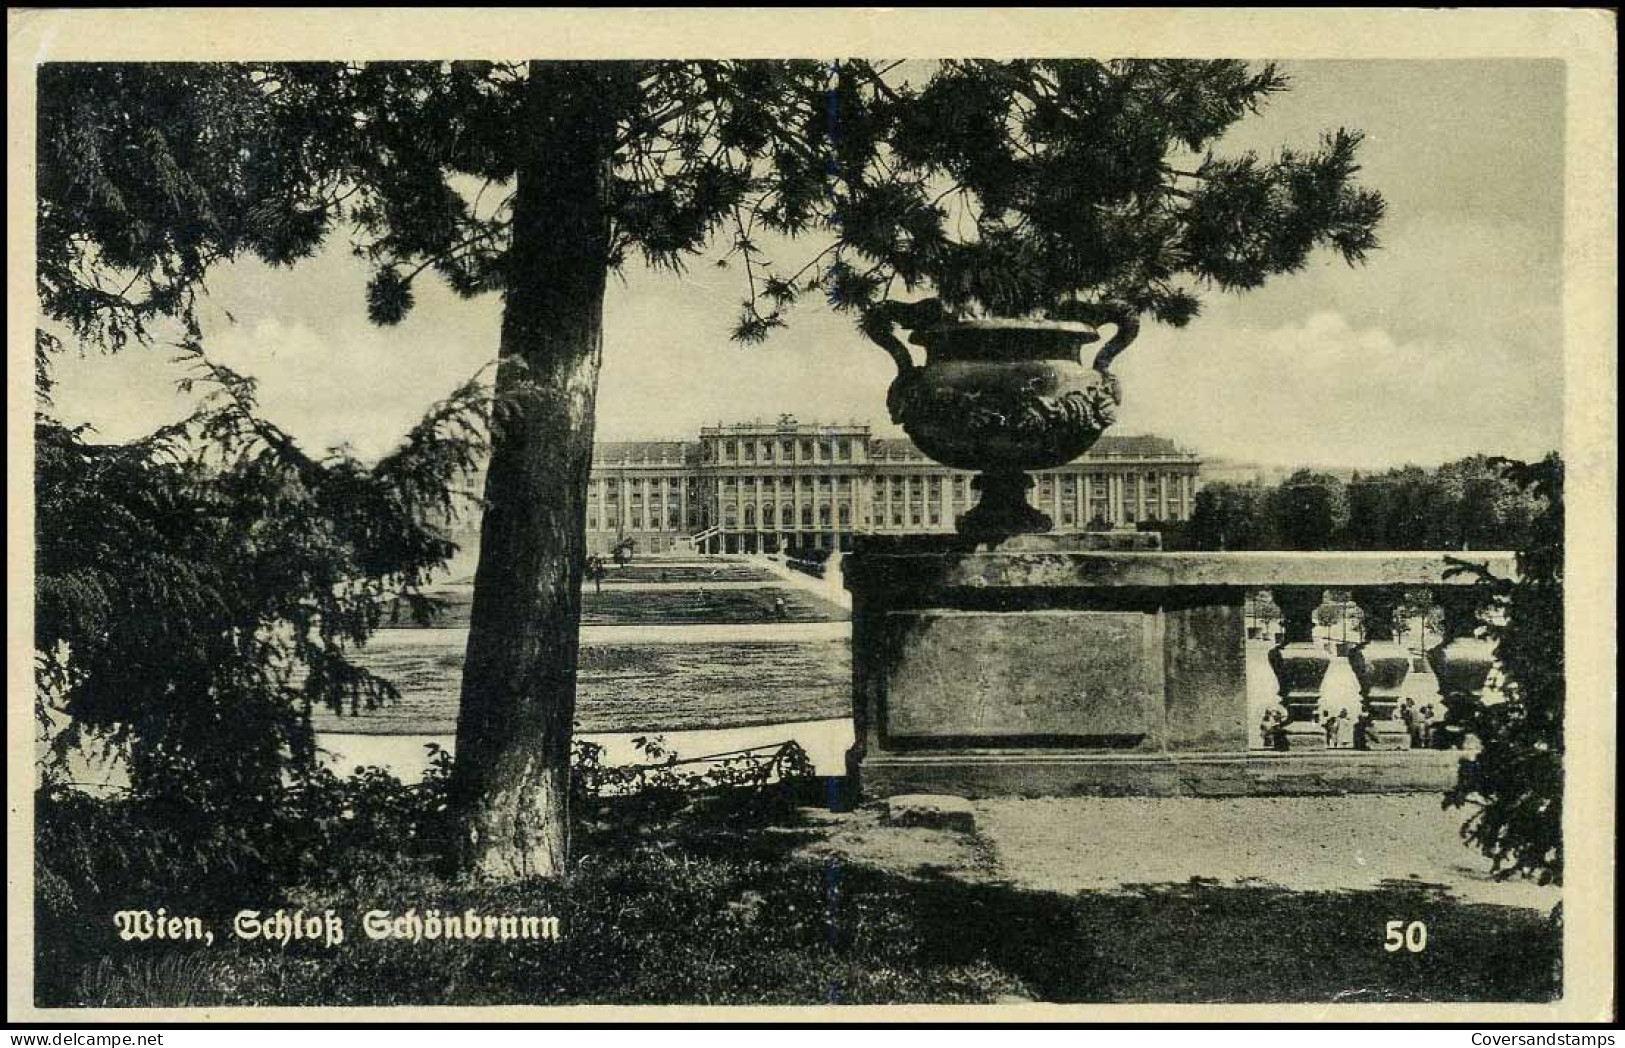 Wien, Schloss Schönbrunn - Schönbrunn Palace